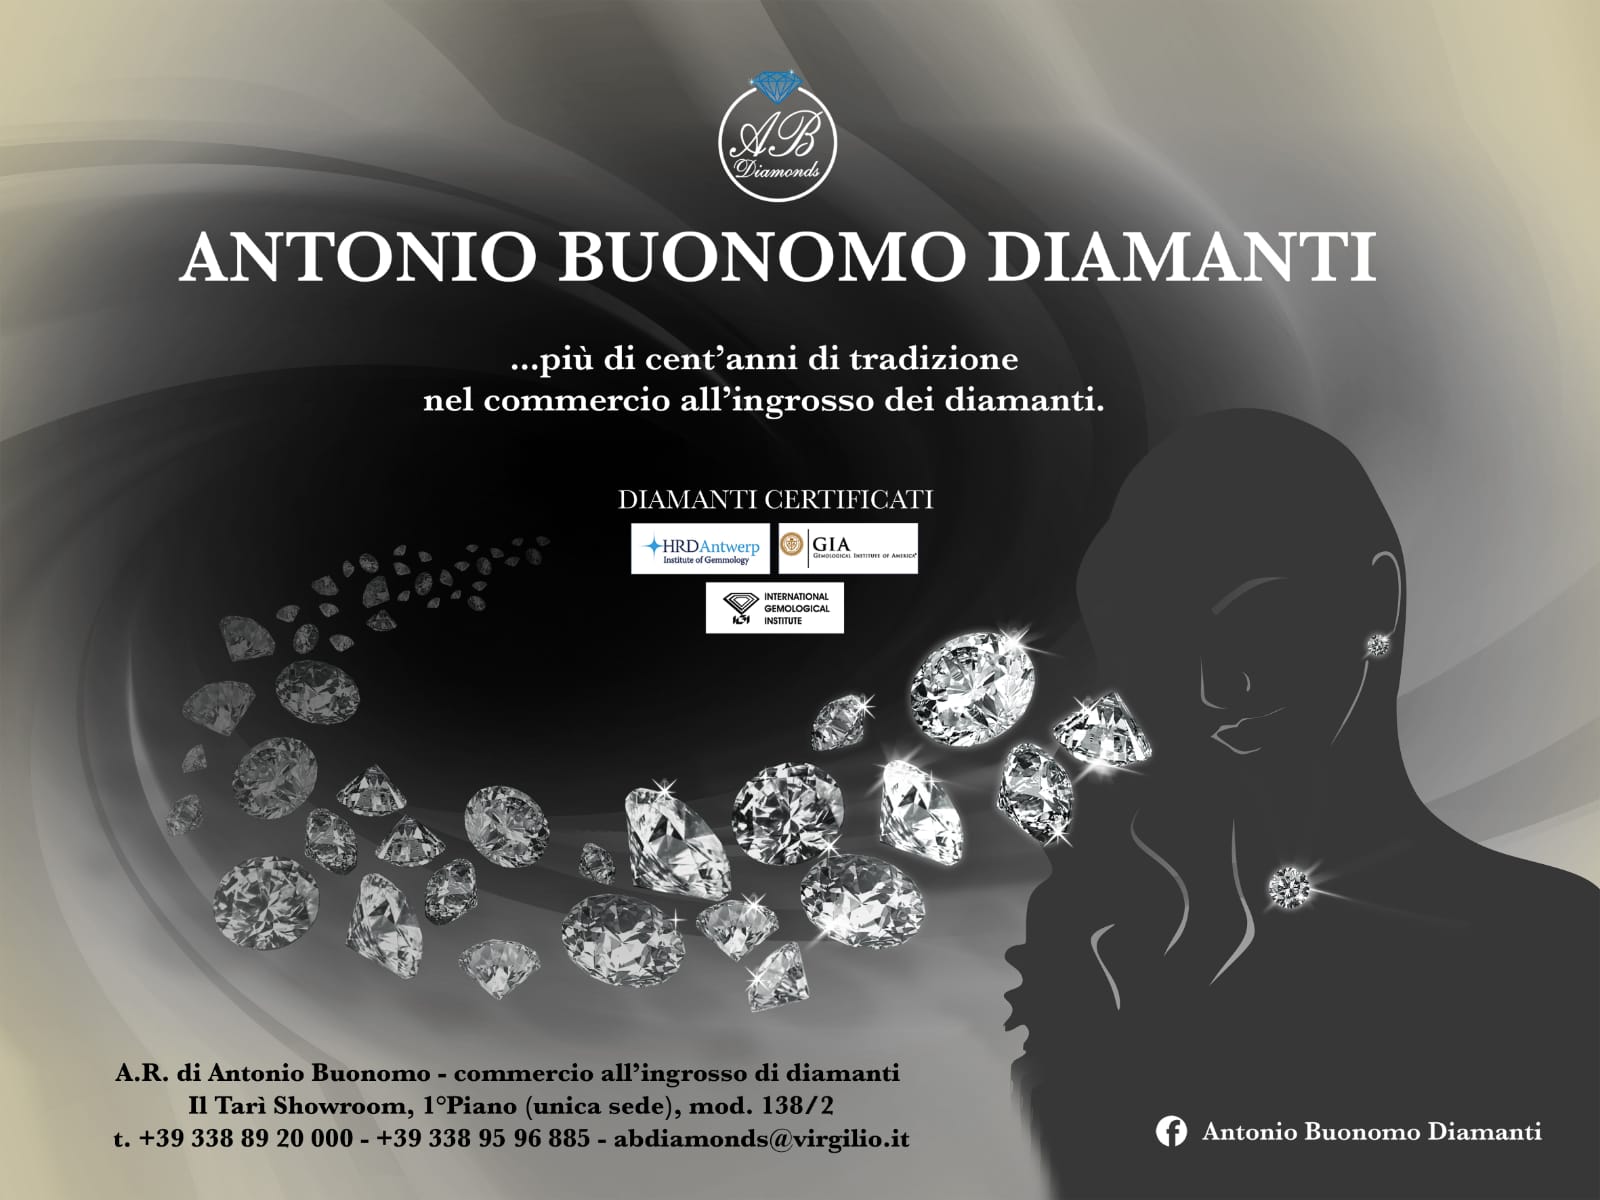 Antonio Buonomo Diamanti